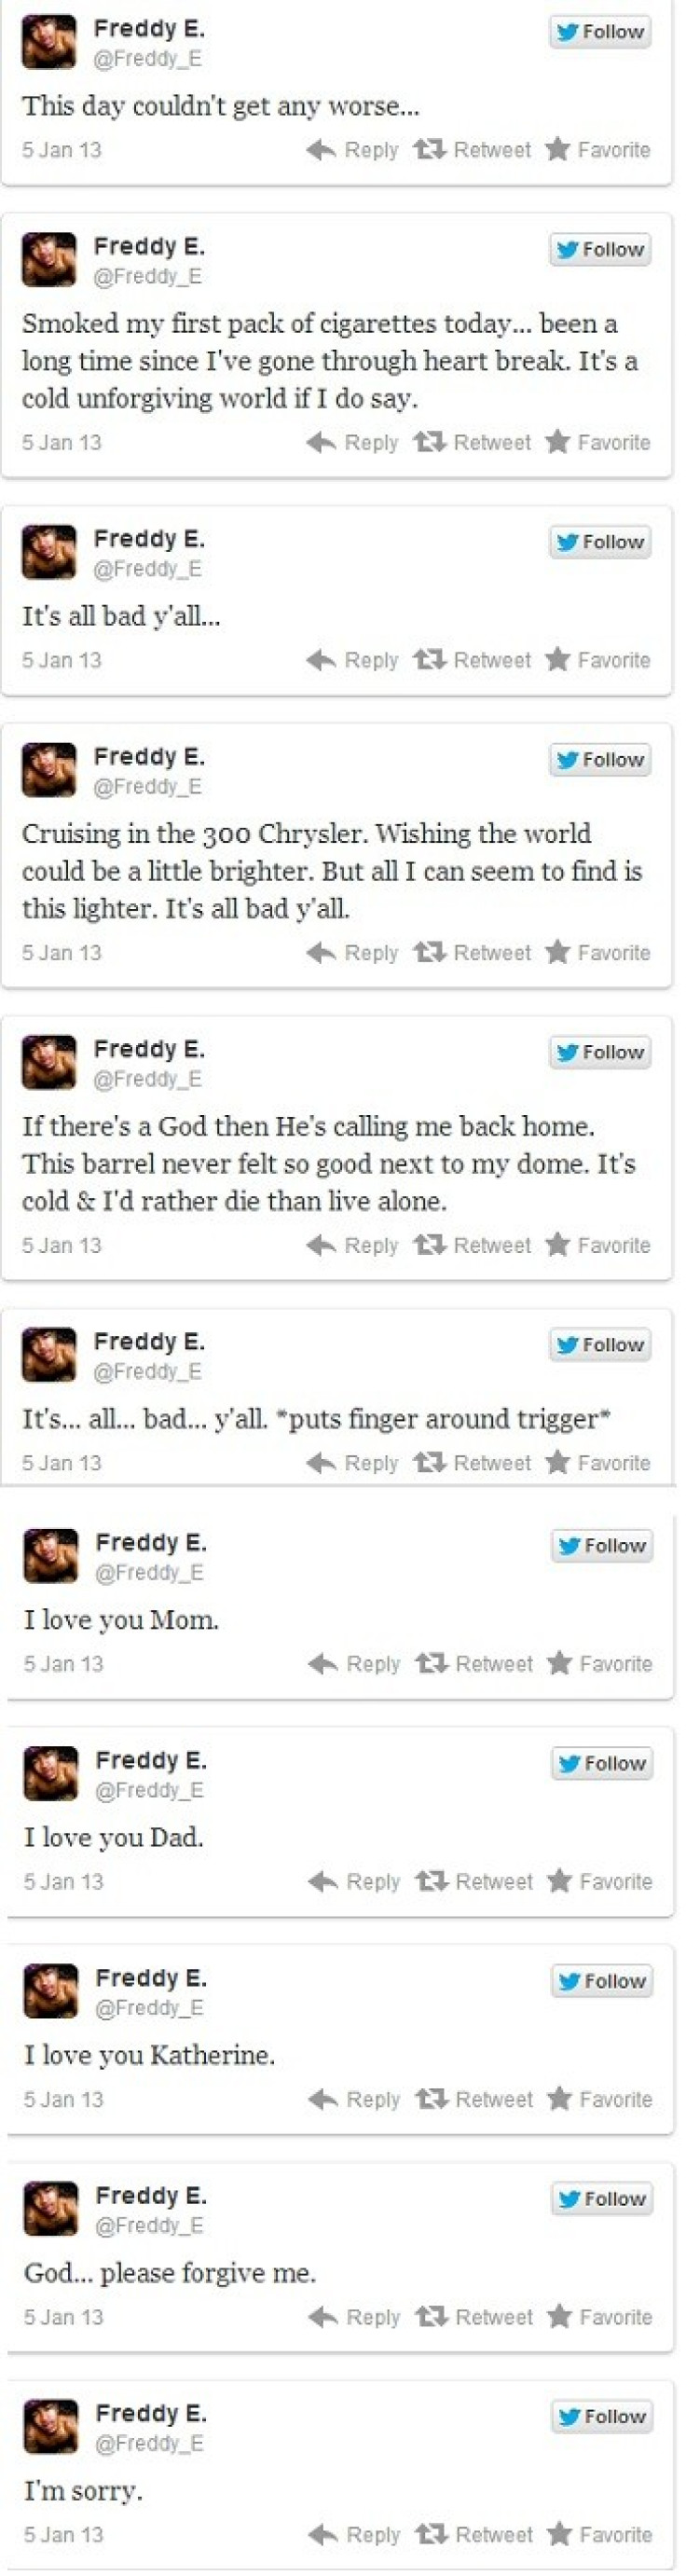 Freddy E tweets